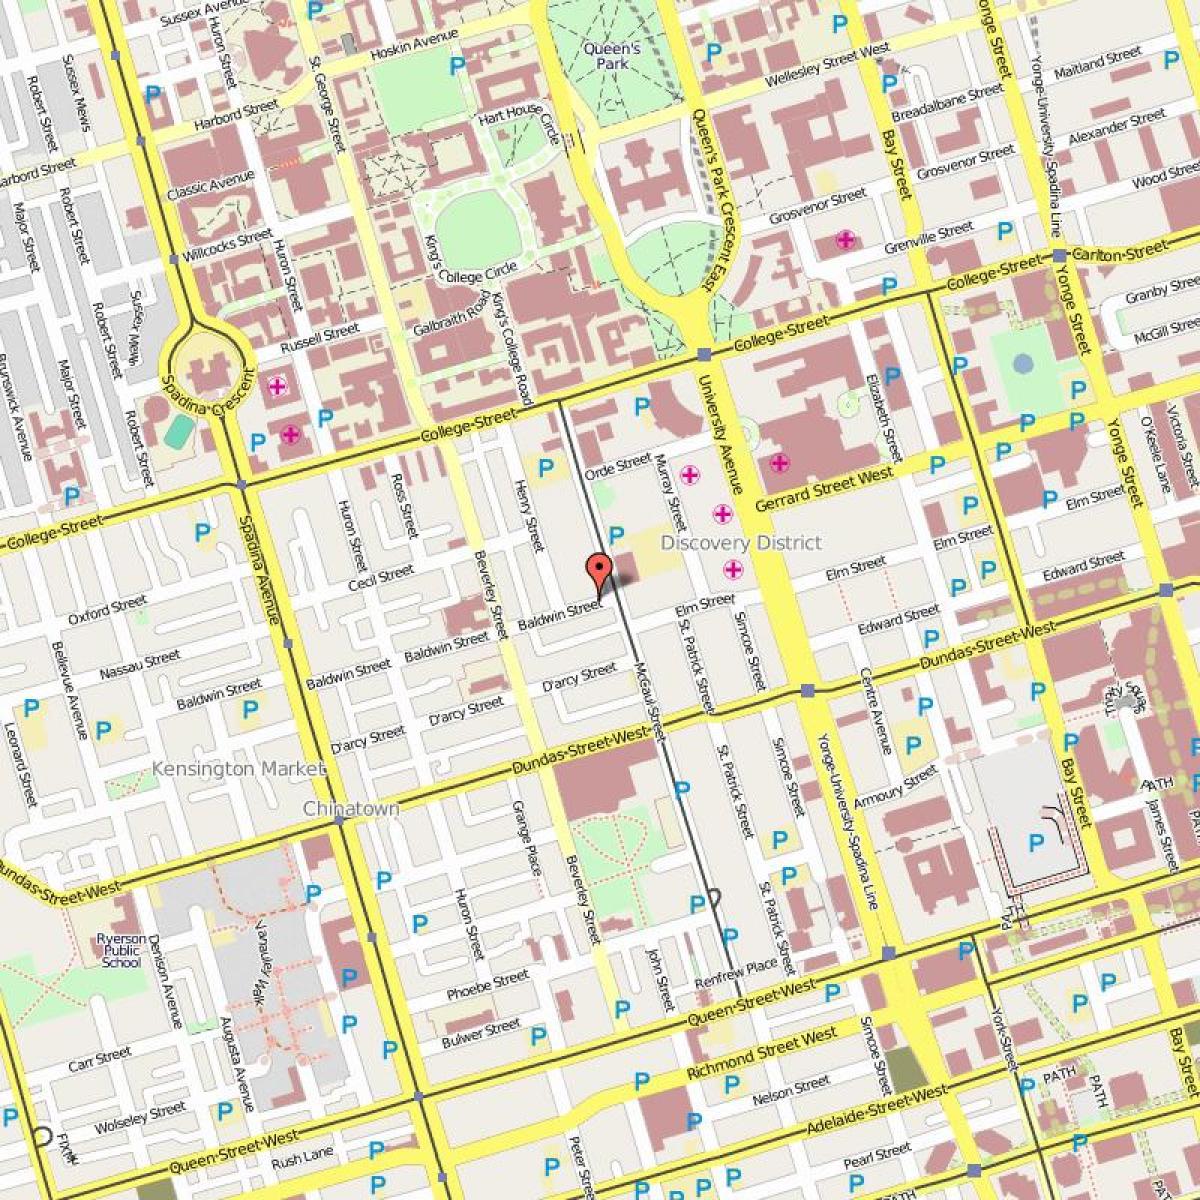 Mapa ng Baldwin Village Toronto